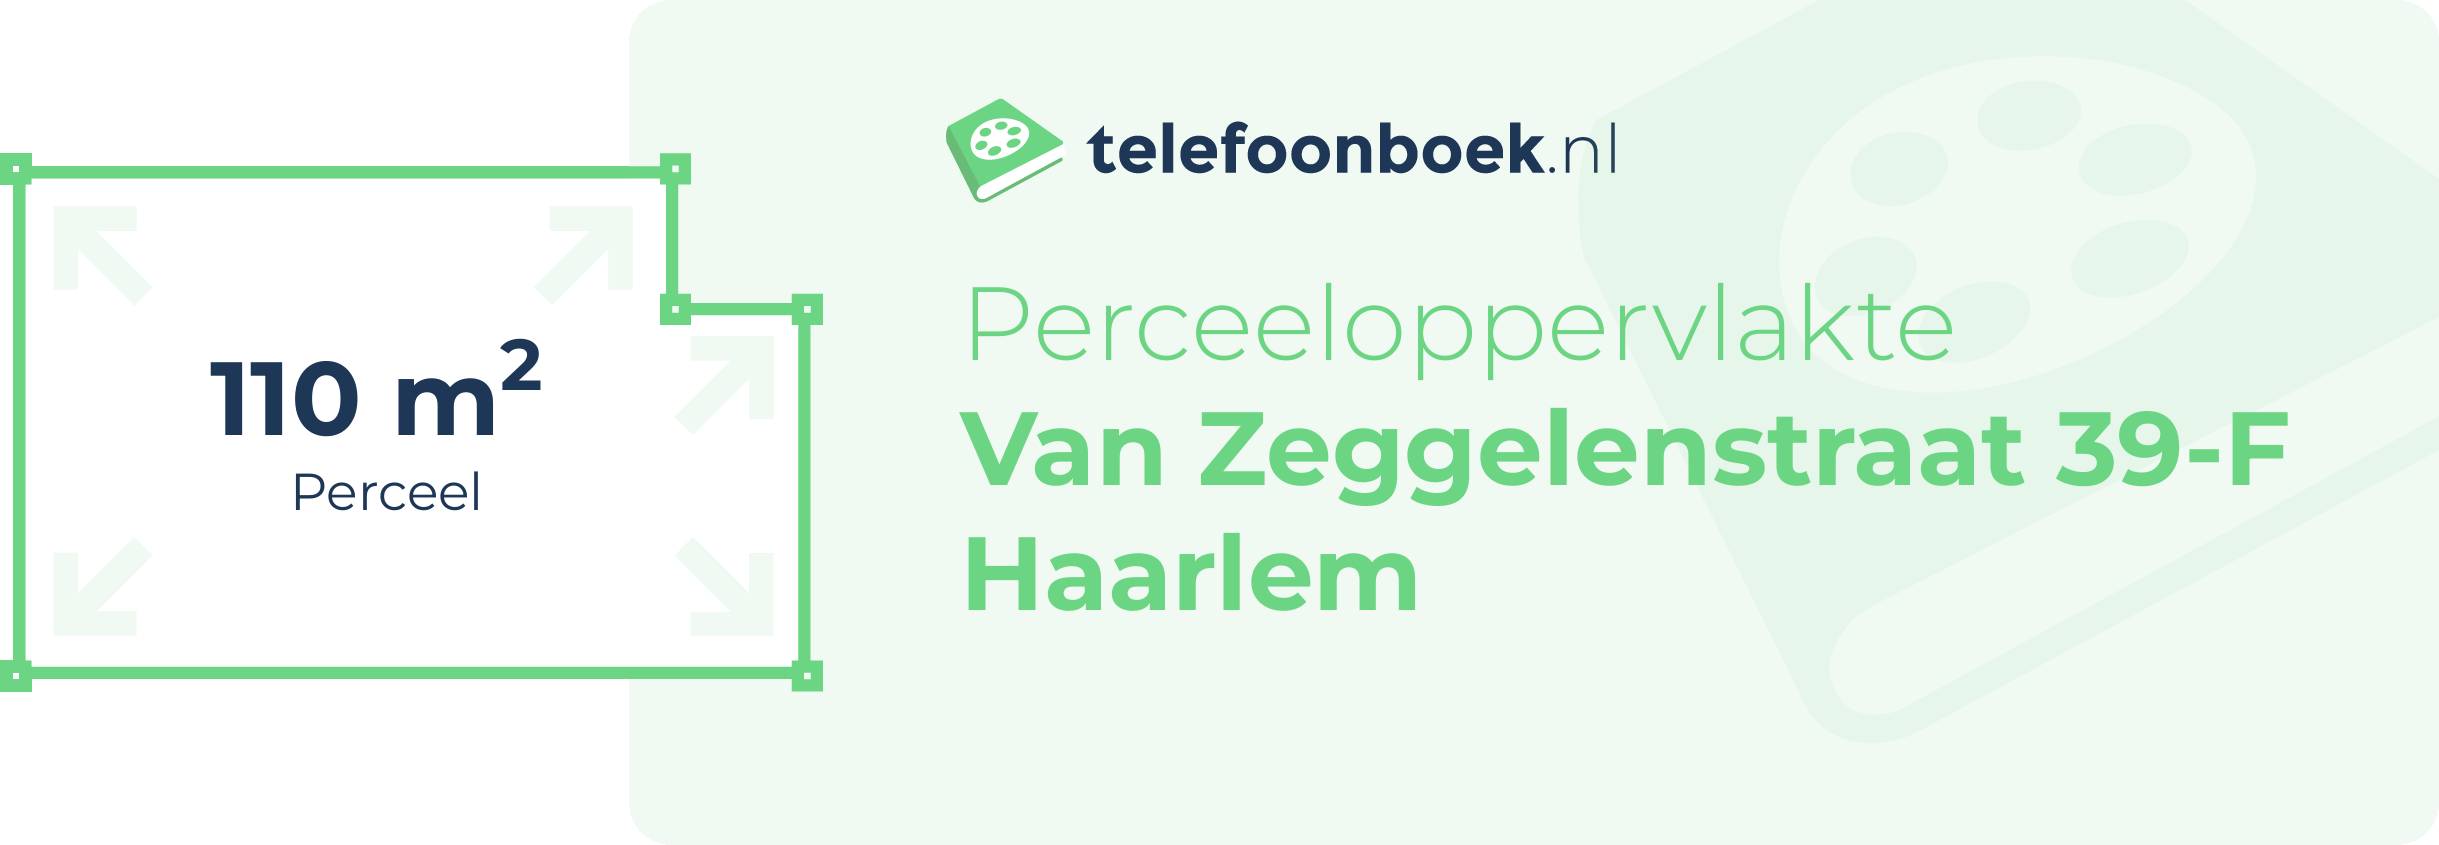 Perceeloppervlakte Van Zeggelenstraat 39-F Haarlem